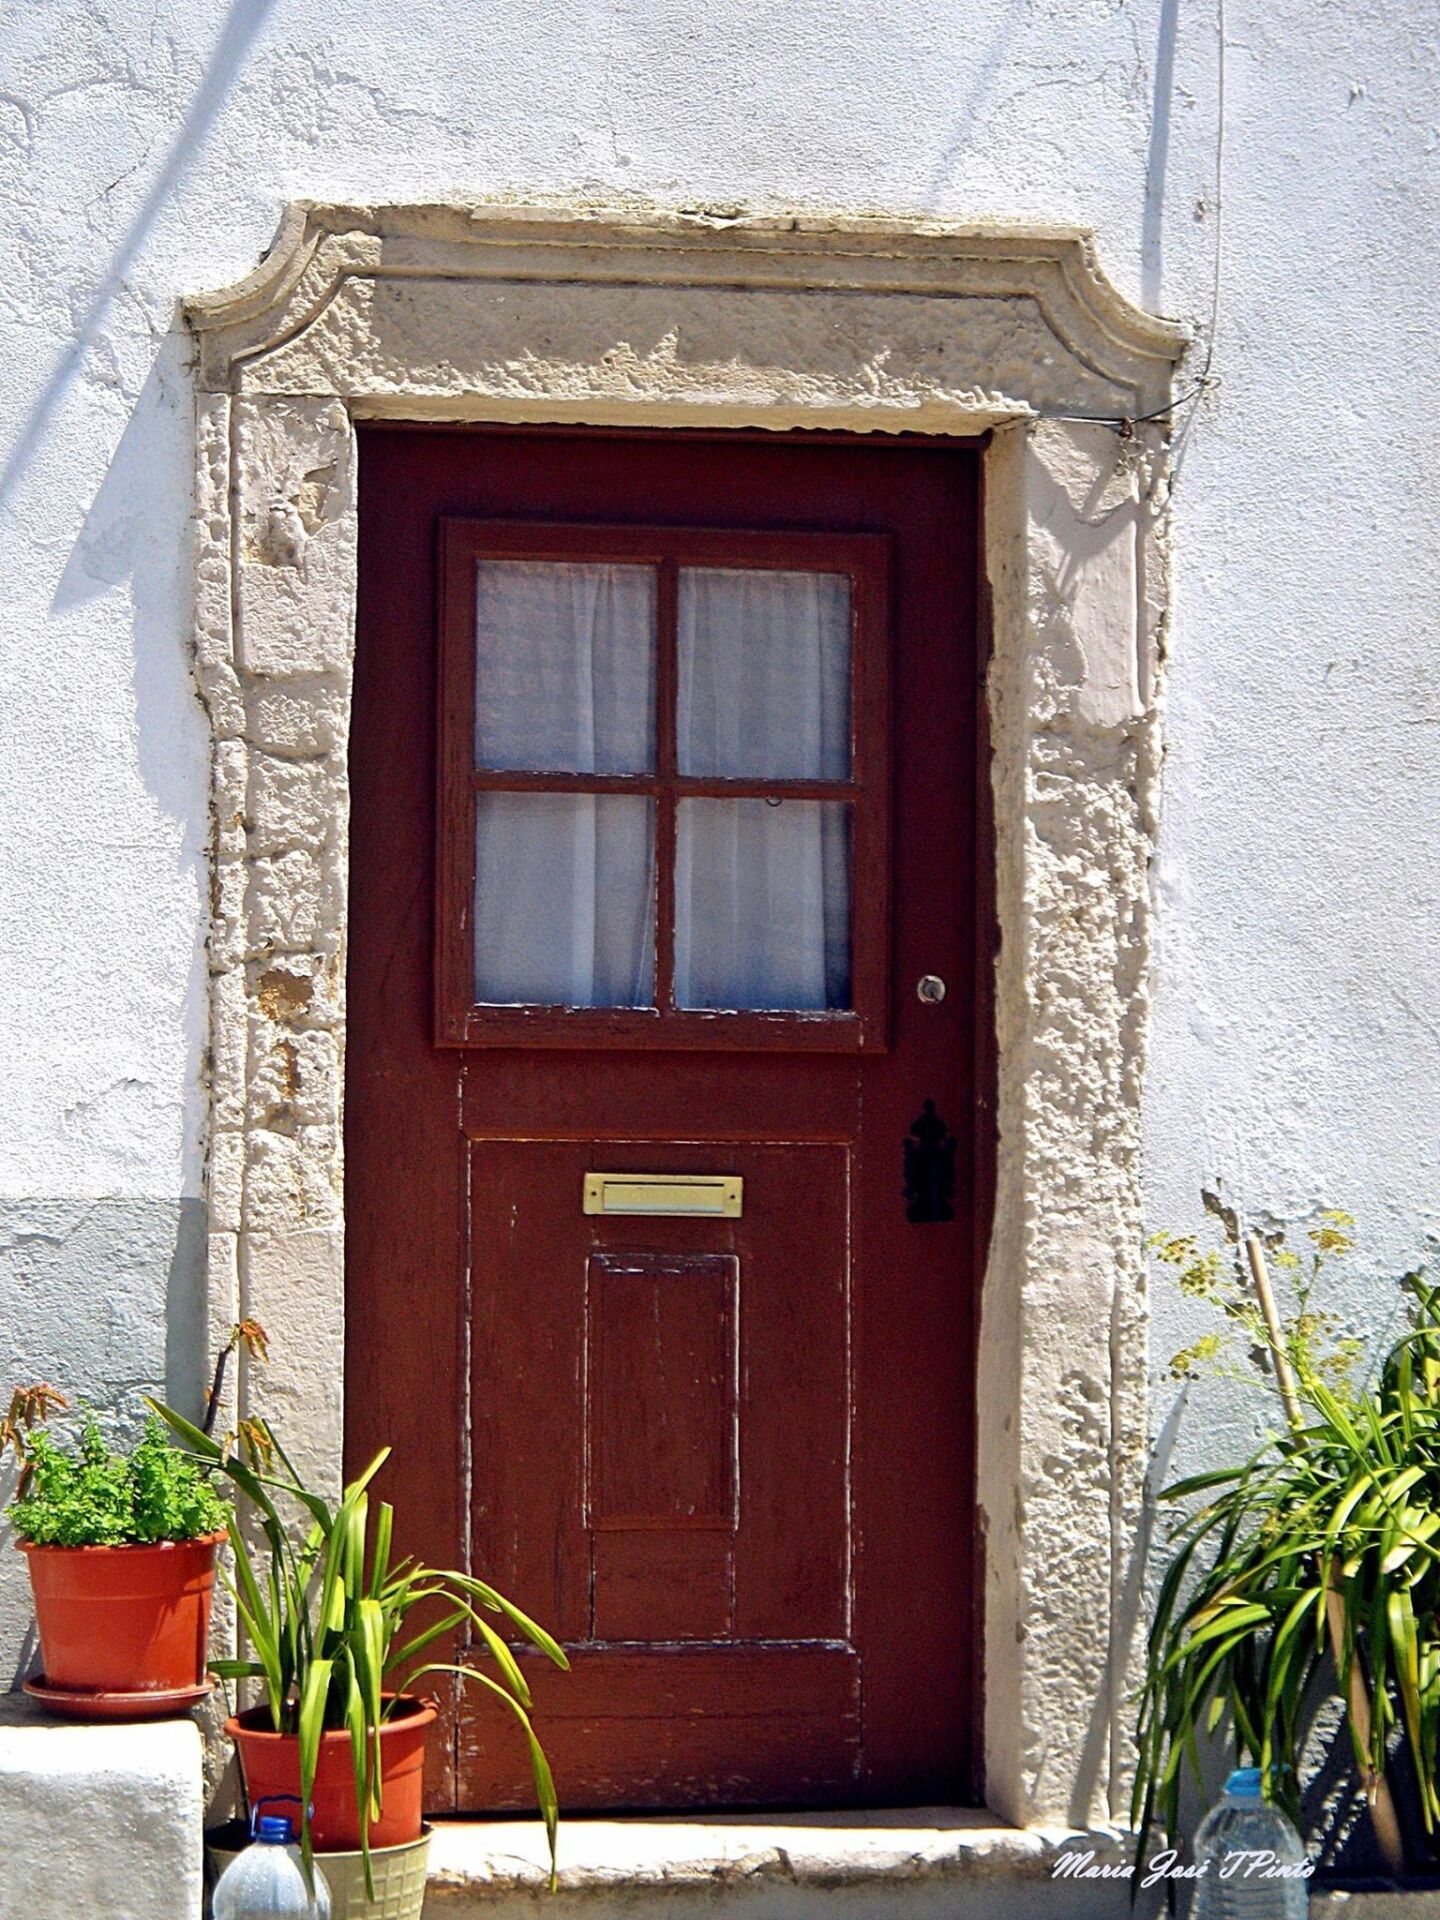 Portuguese door 7